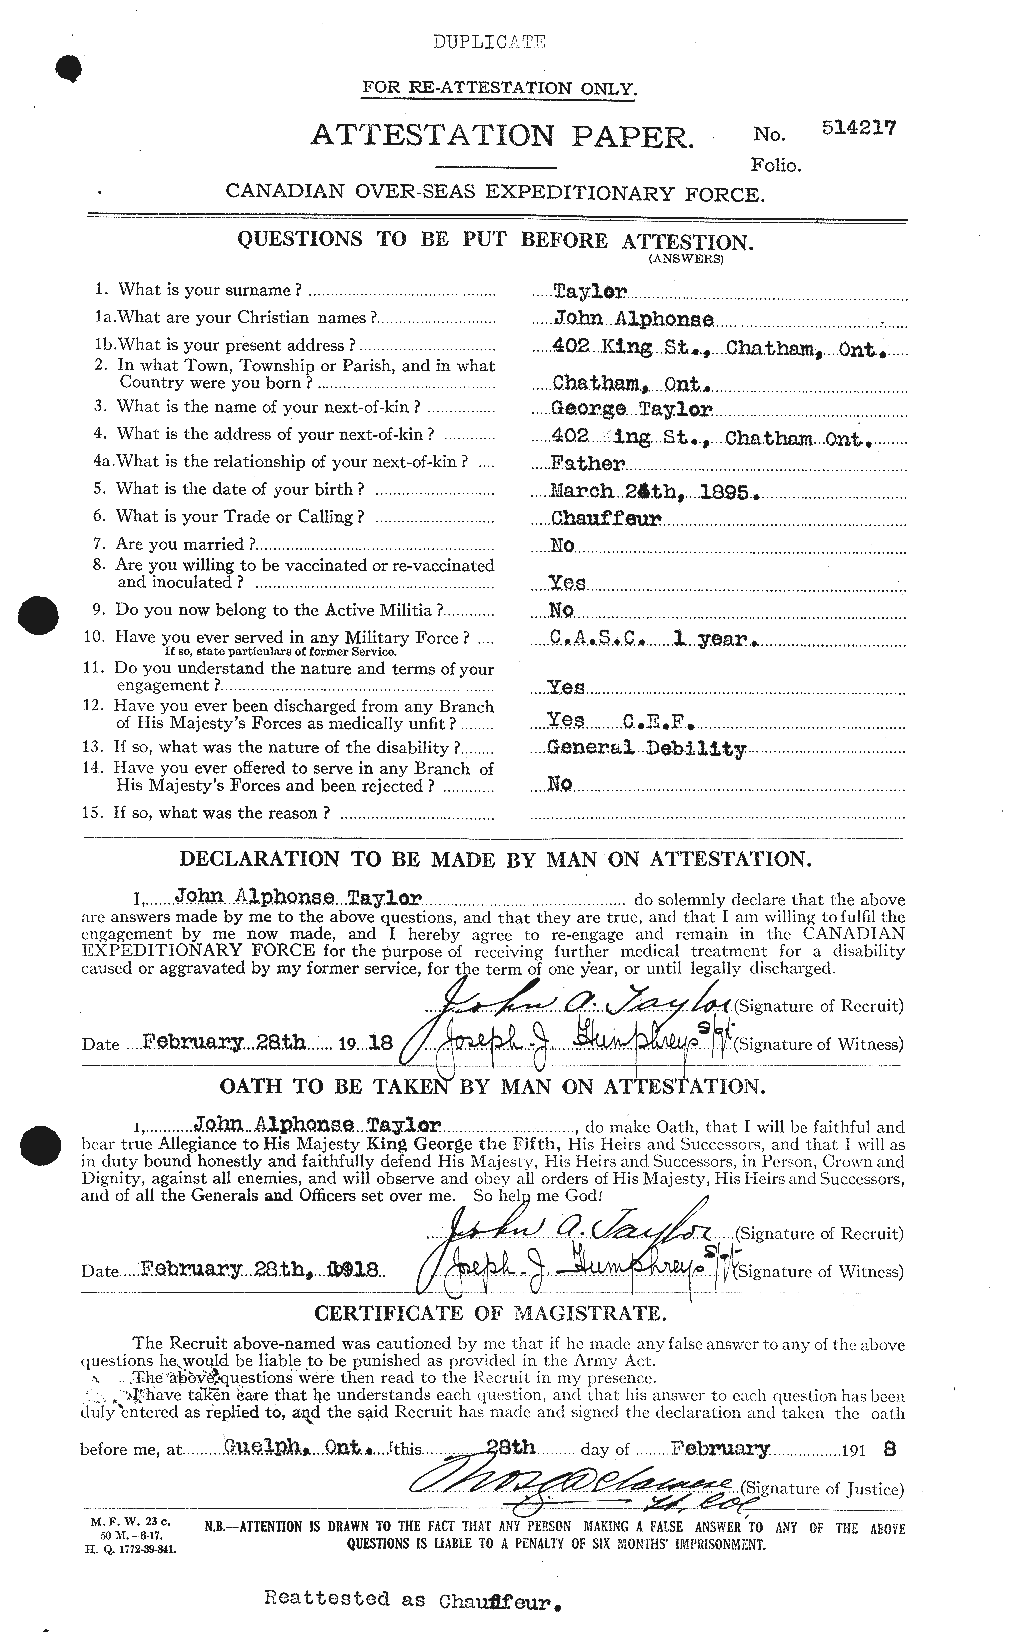 Dossiers du Personnel de la Première Guerre mondiale - CEC 627047a